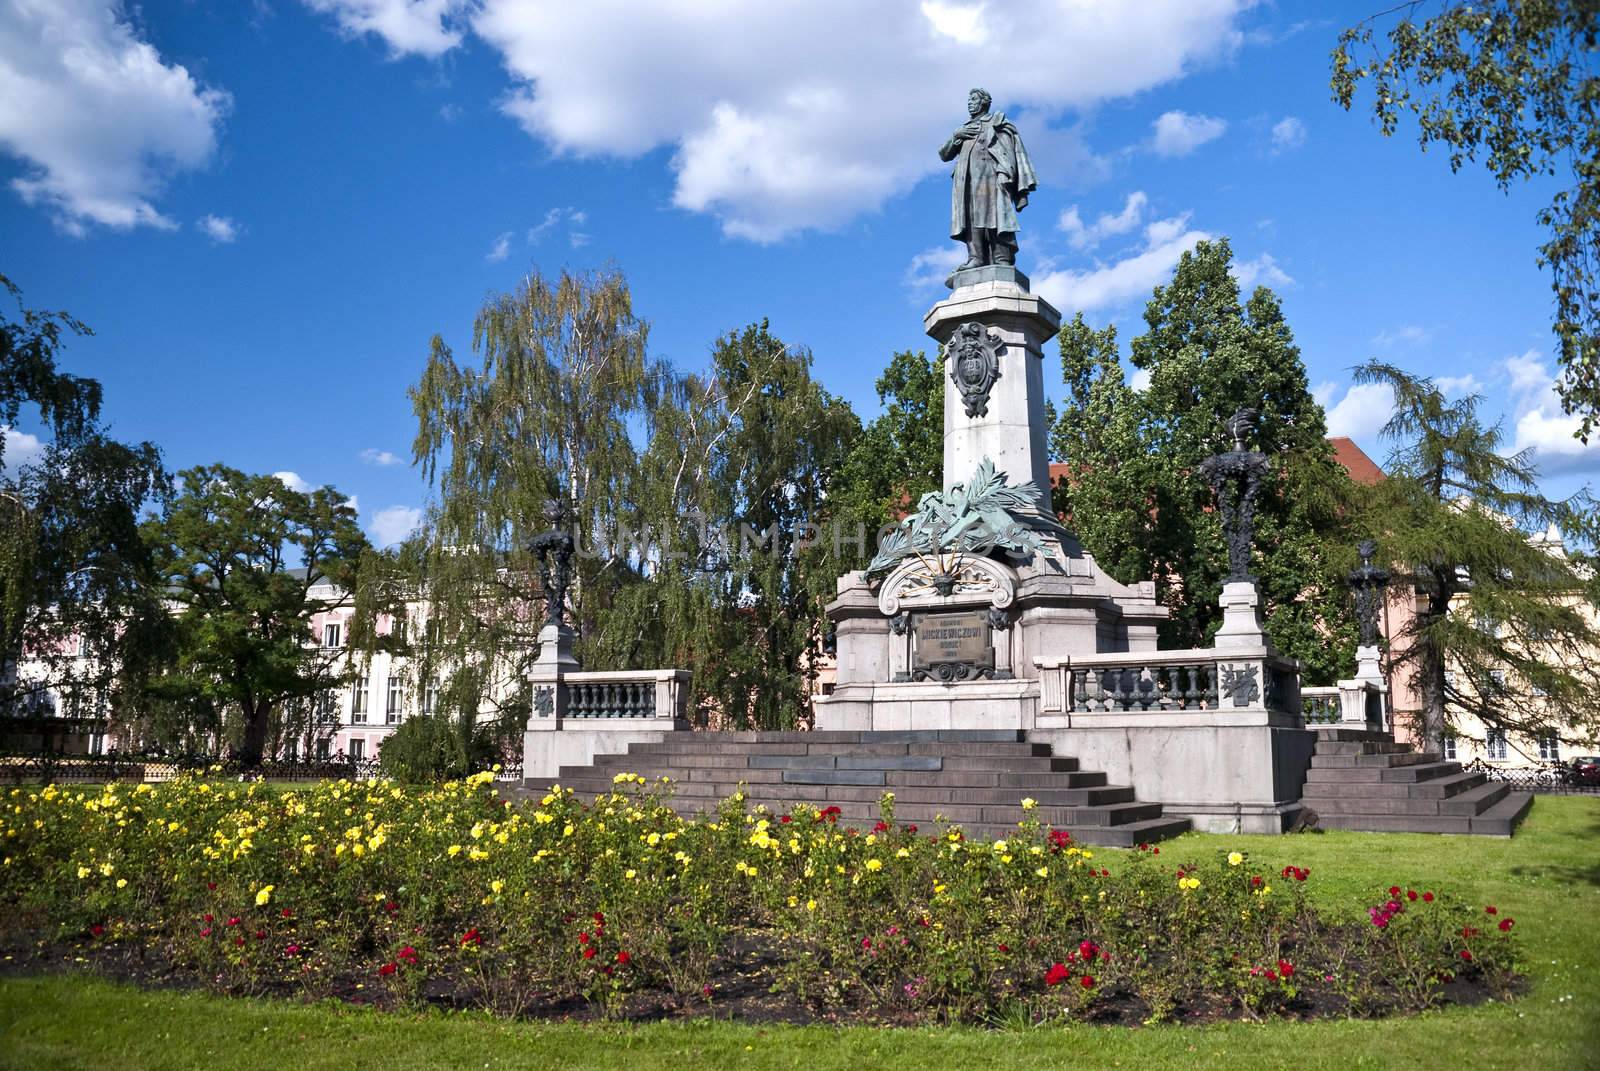 Statue of Adam Mickiewicz in Warsaw, Poland by wojciechkozlowski